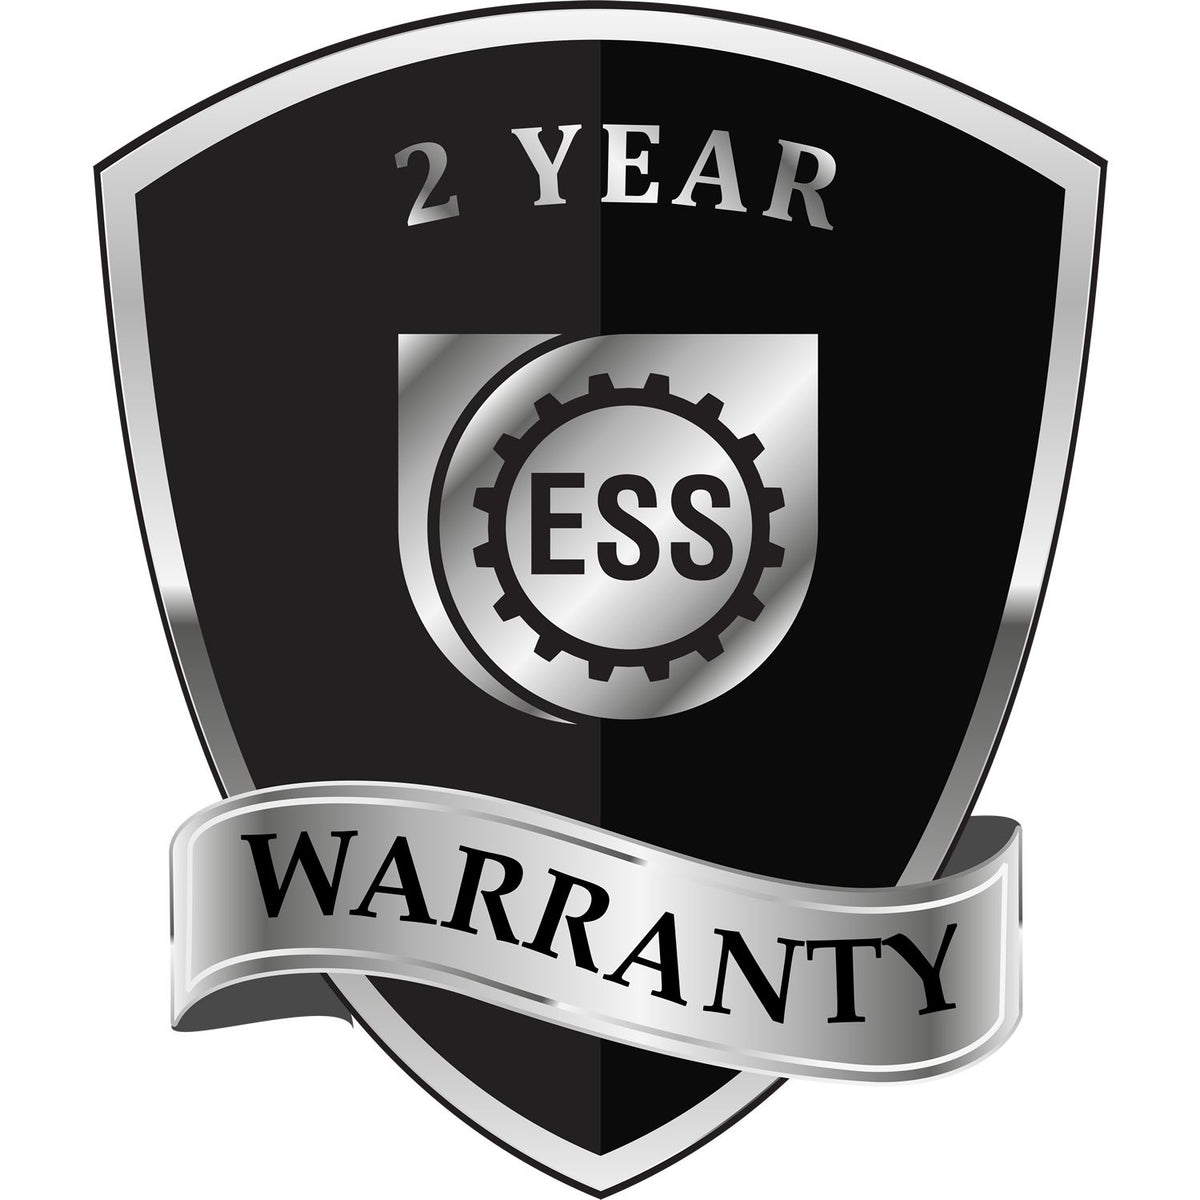 A black and silver badge or emblem showing warranty information for the Hybrid North Carolina Land Surveyor Seal